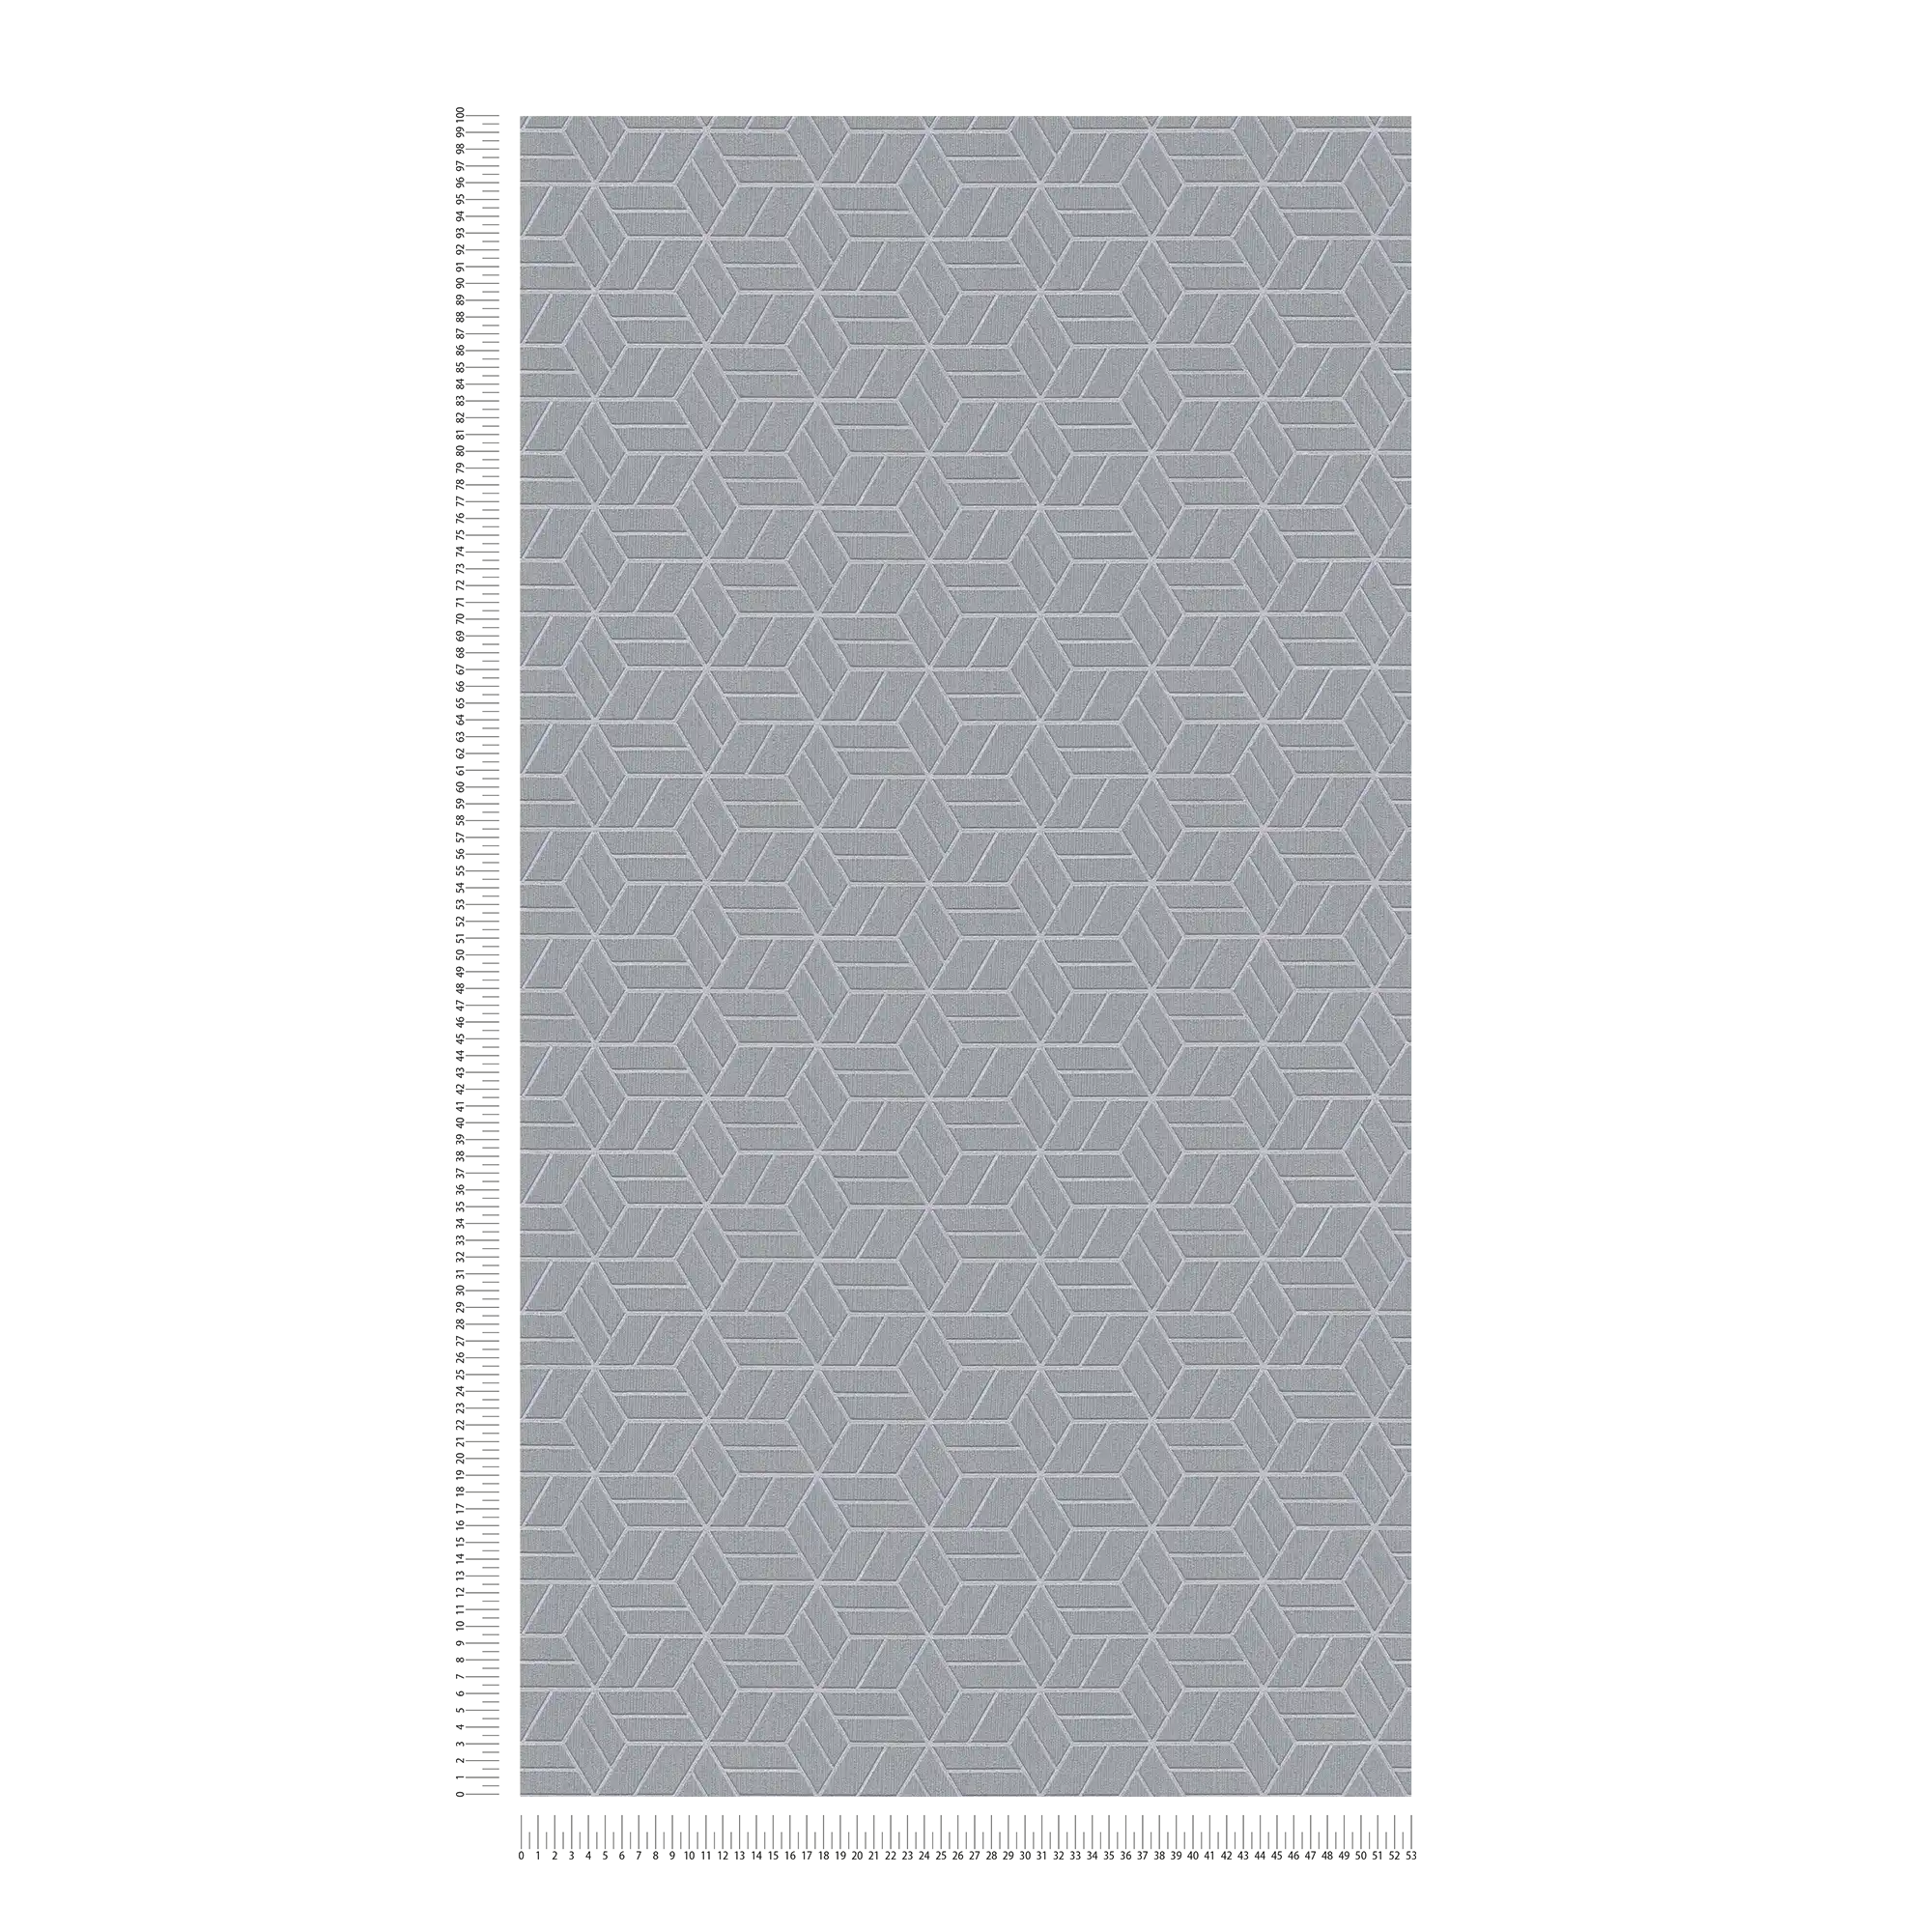             Tapete geometrisches Muster & Glitzer-Effekt – Grau, Silber
        